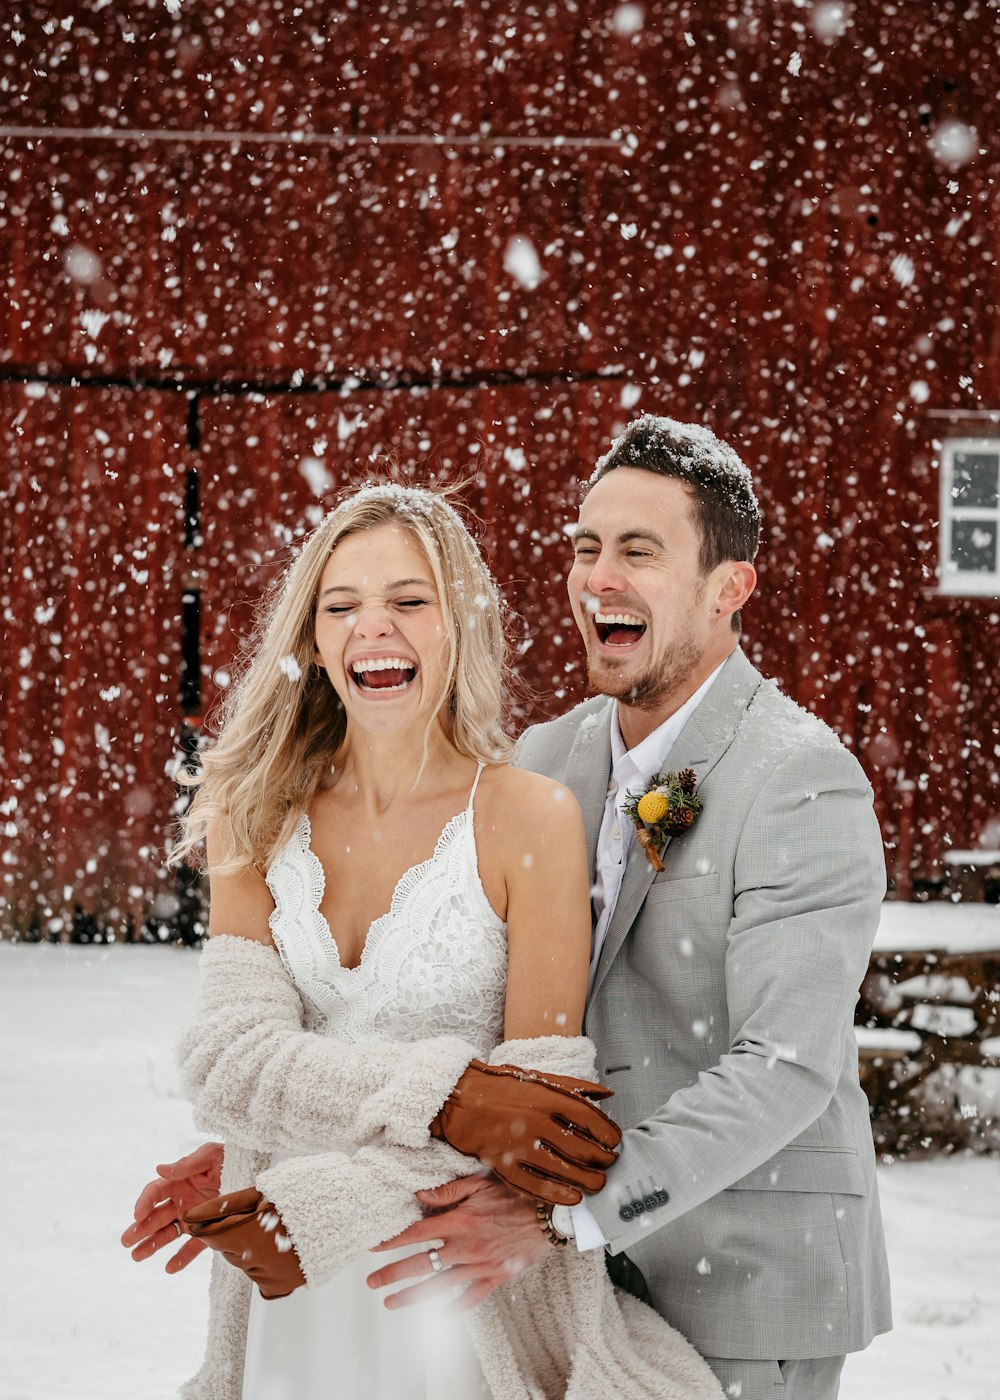 Una novia y un novio riendo en la nieve